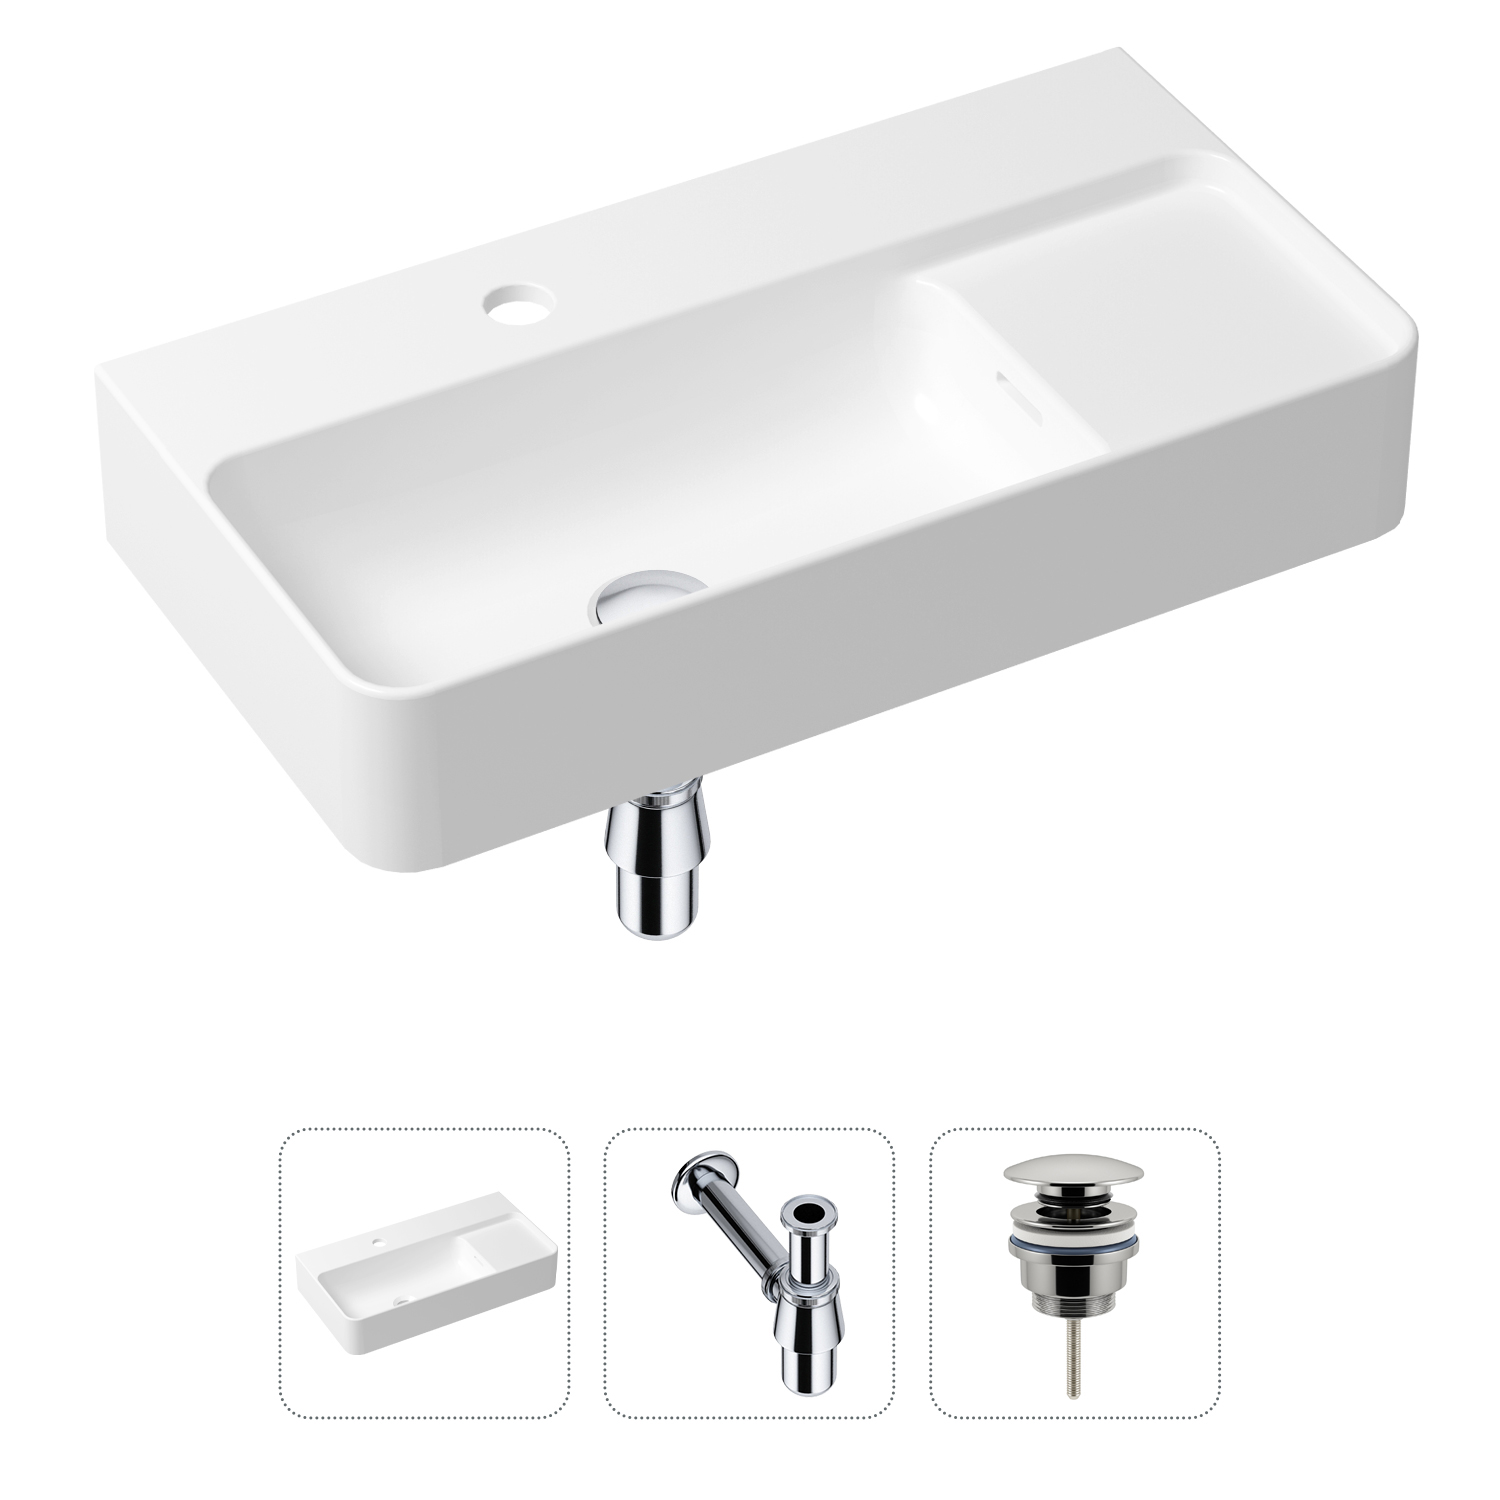 Комплект 3 в 1 Lavinia Boho Bathroom Sink 21520491: раковина 60 см, сифон, донный клапан